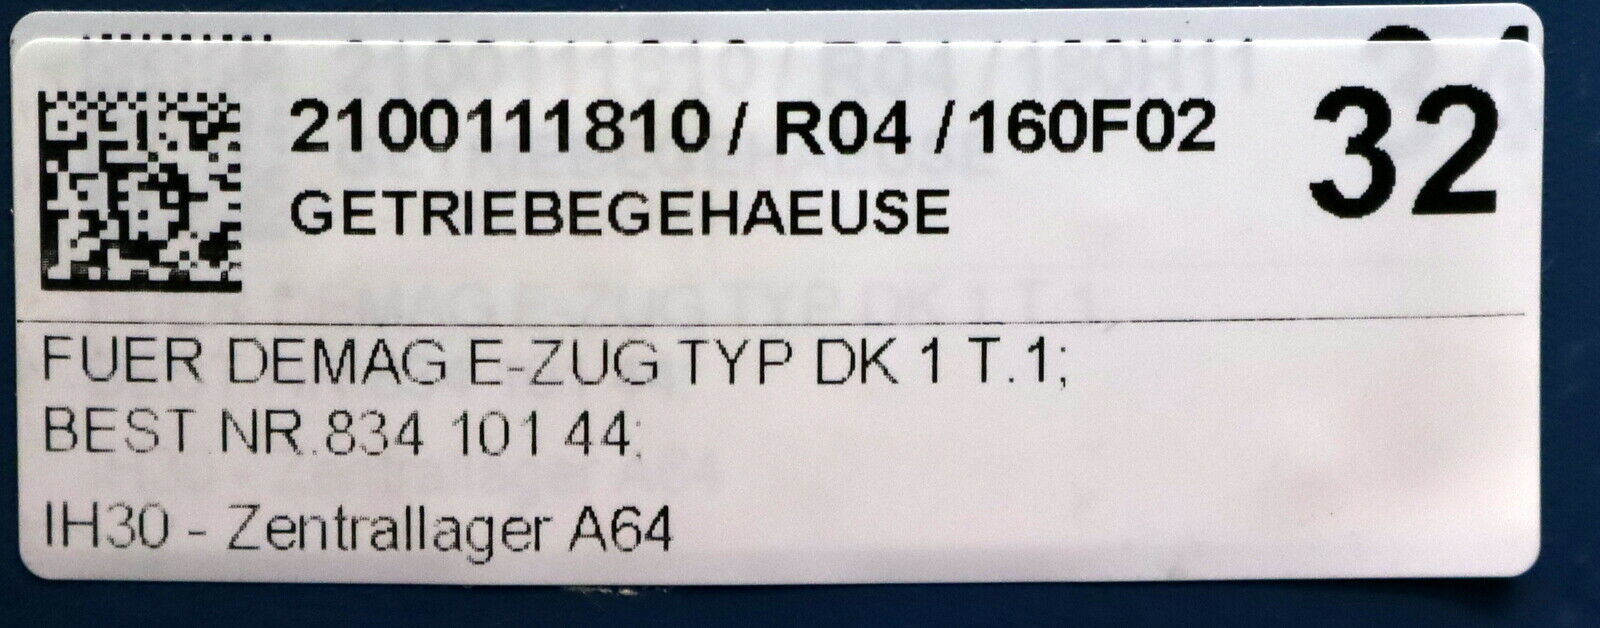 DEMAG Getriebegehäuse Art.Nr. 83410144 für DEMAG E-Zug Typ DK1 T.1 - unbenutzt